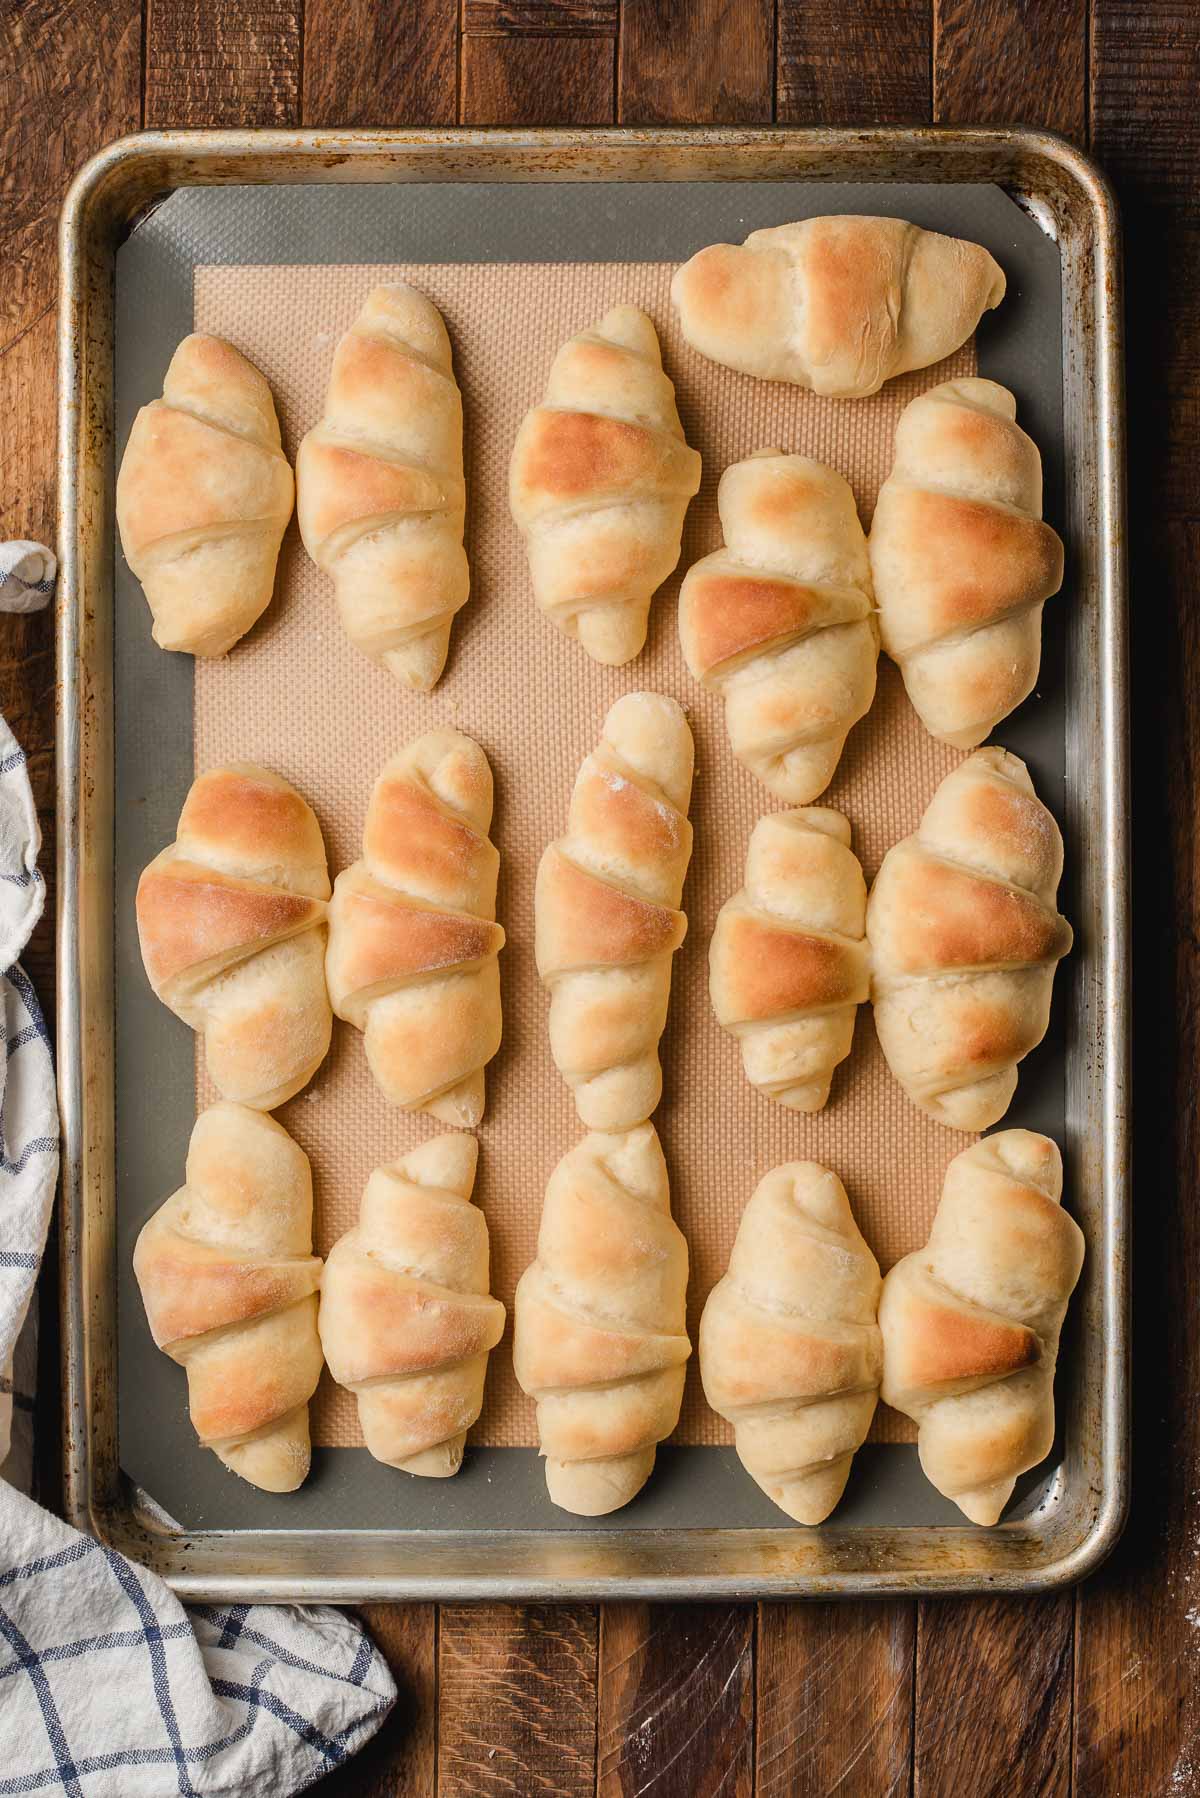 Freshly baked butterhorns dinner rolls on a sultry sheet.